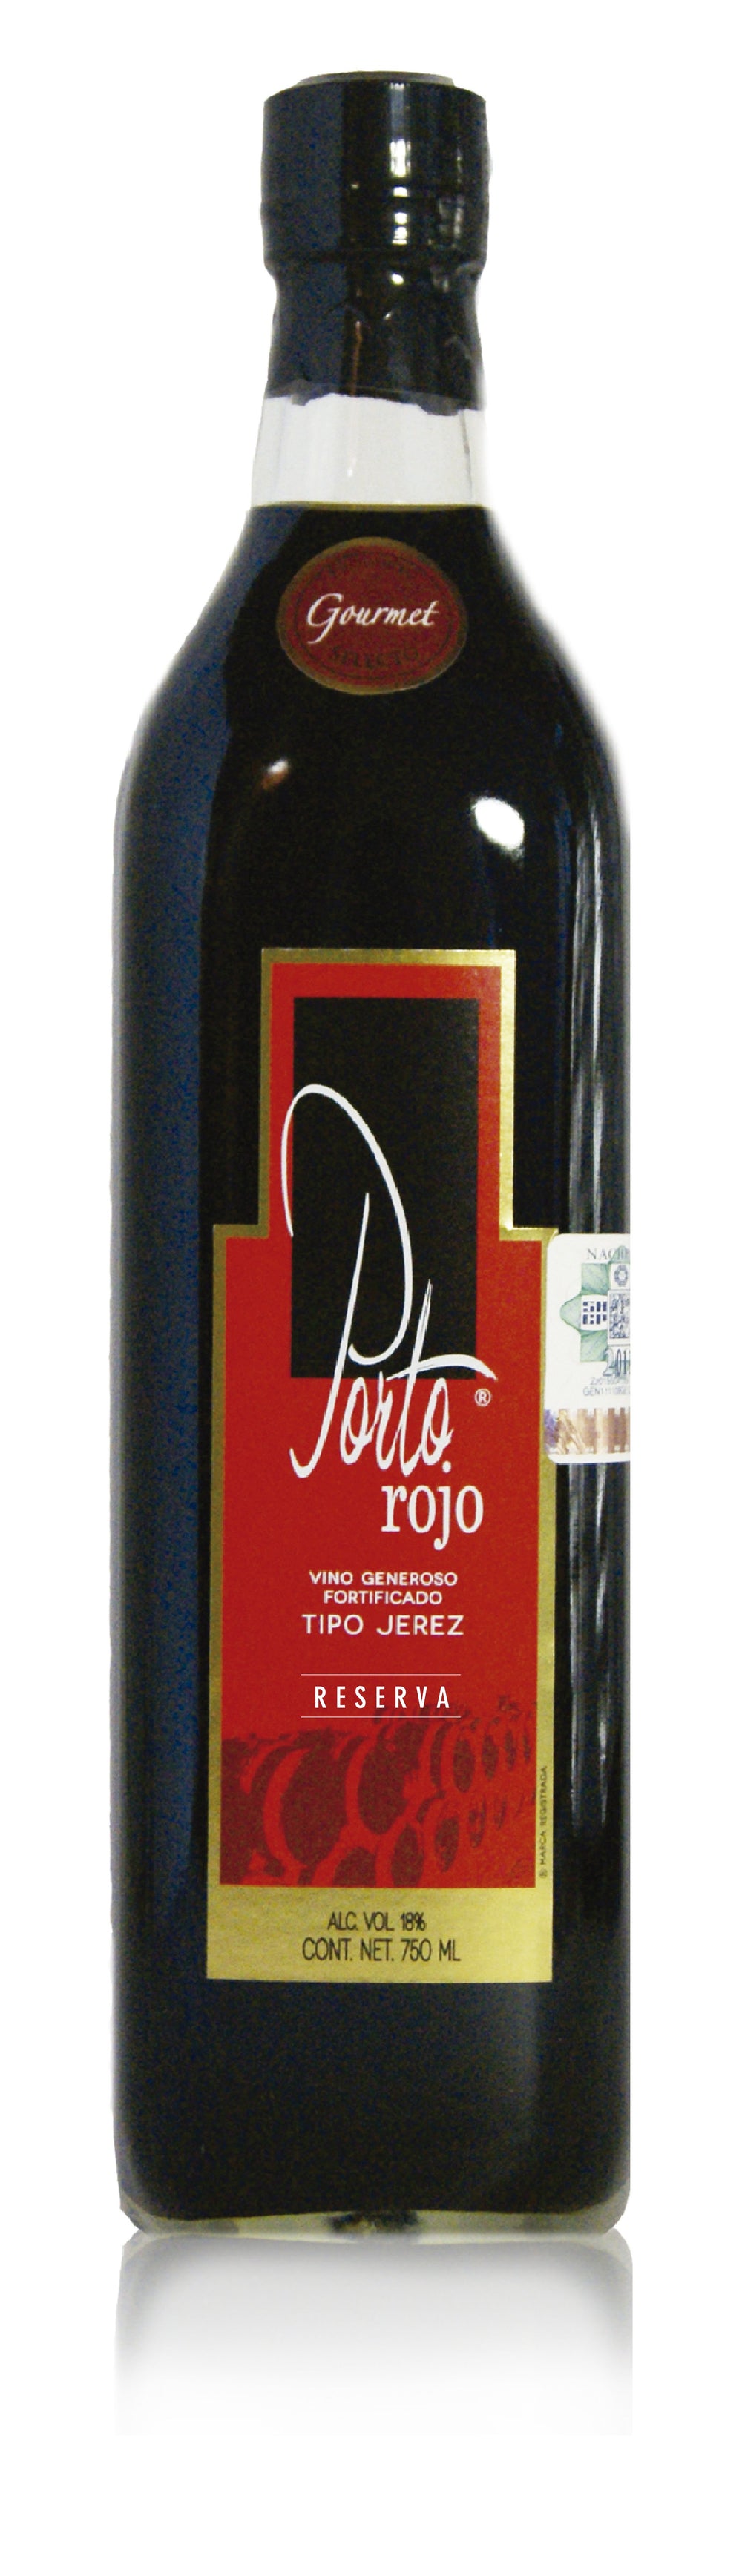 Vino Generoso Porton Rojo Vino Tipo Jerez 750 ml